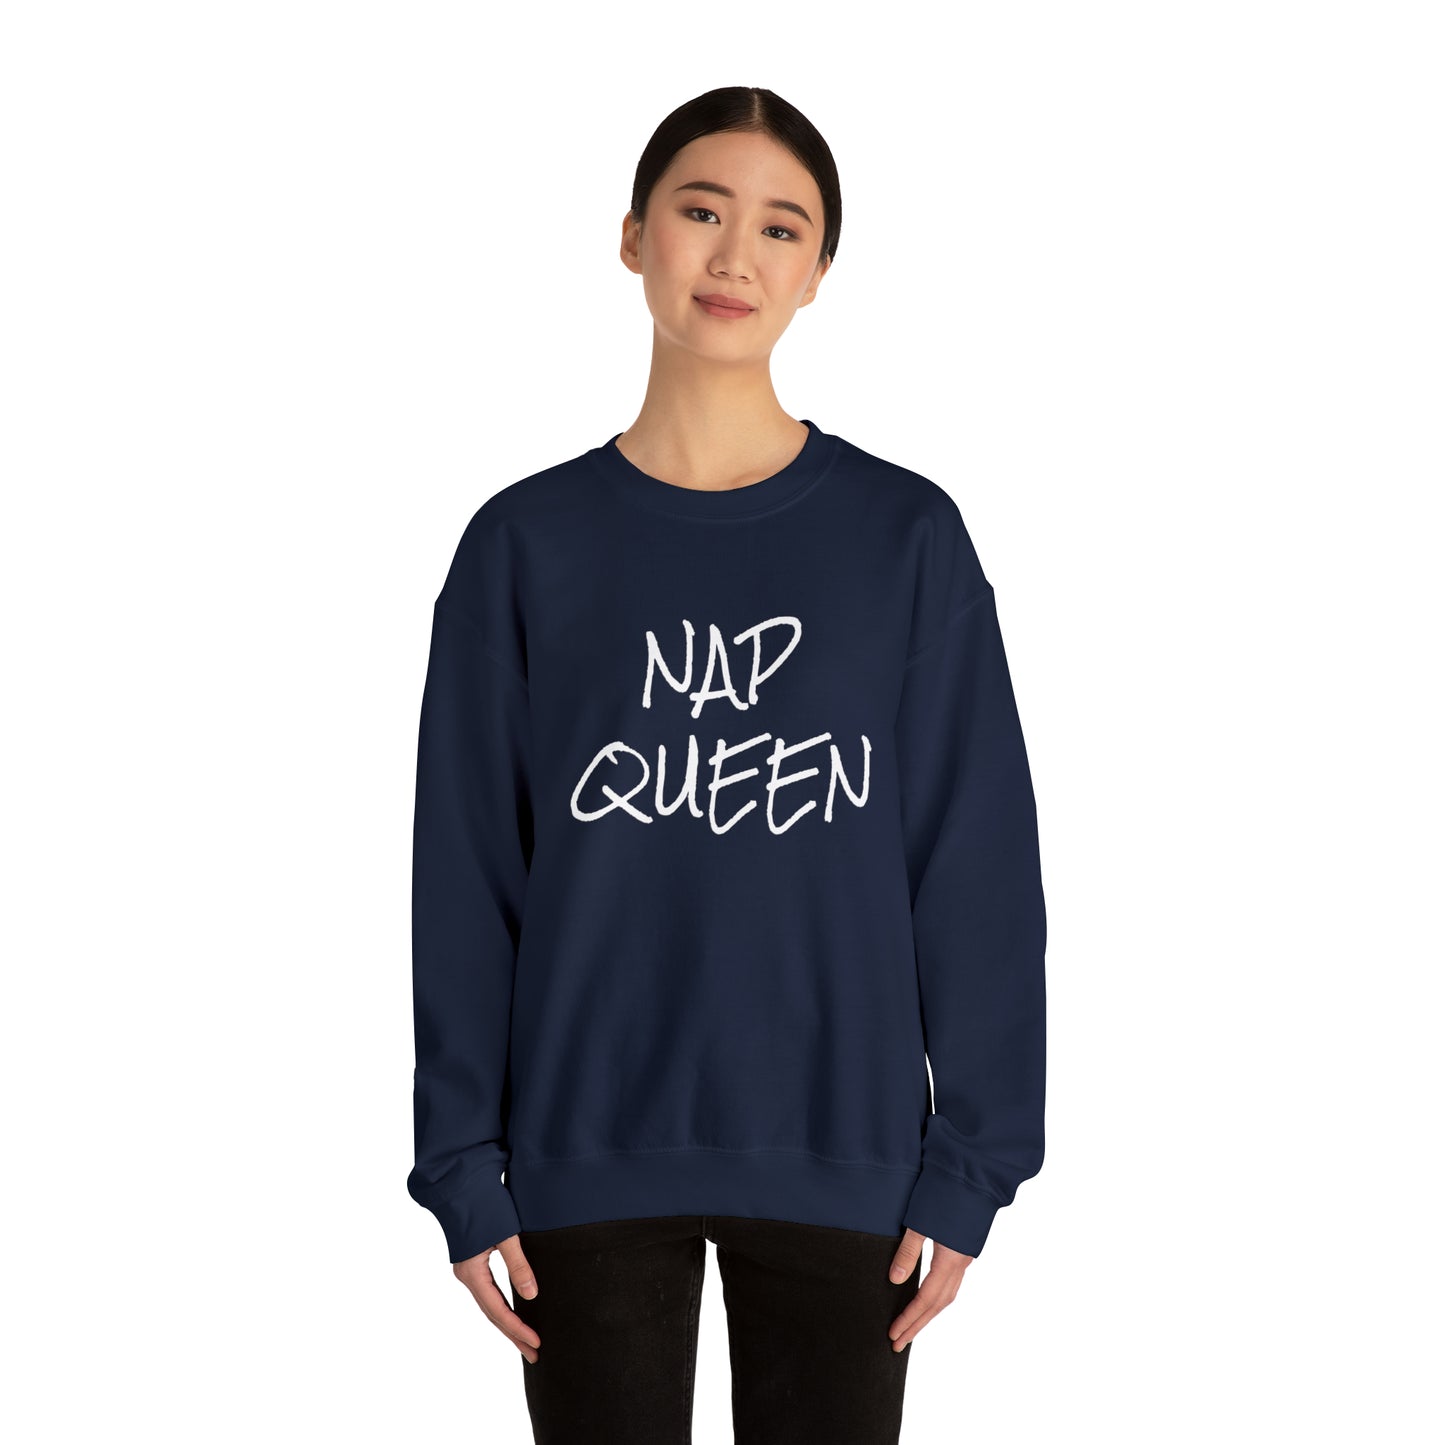 NAP QUEEN Women's Heavy Blend™ Crewneck Sweatshirt